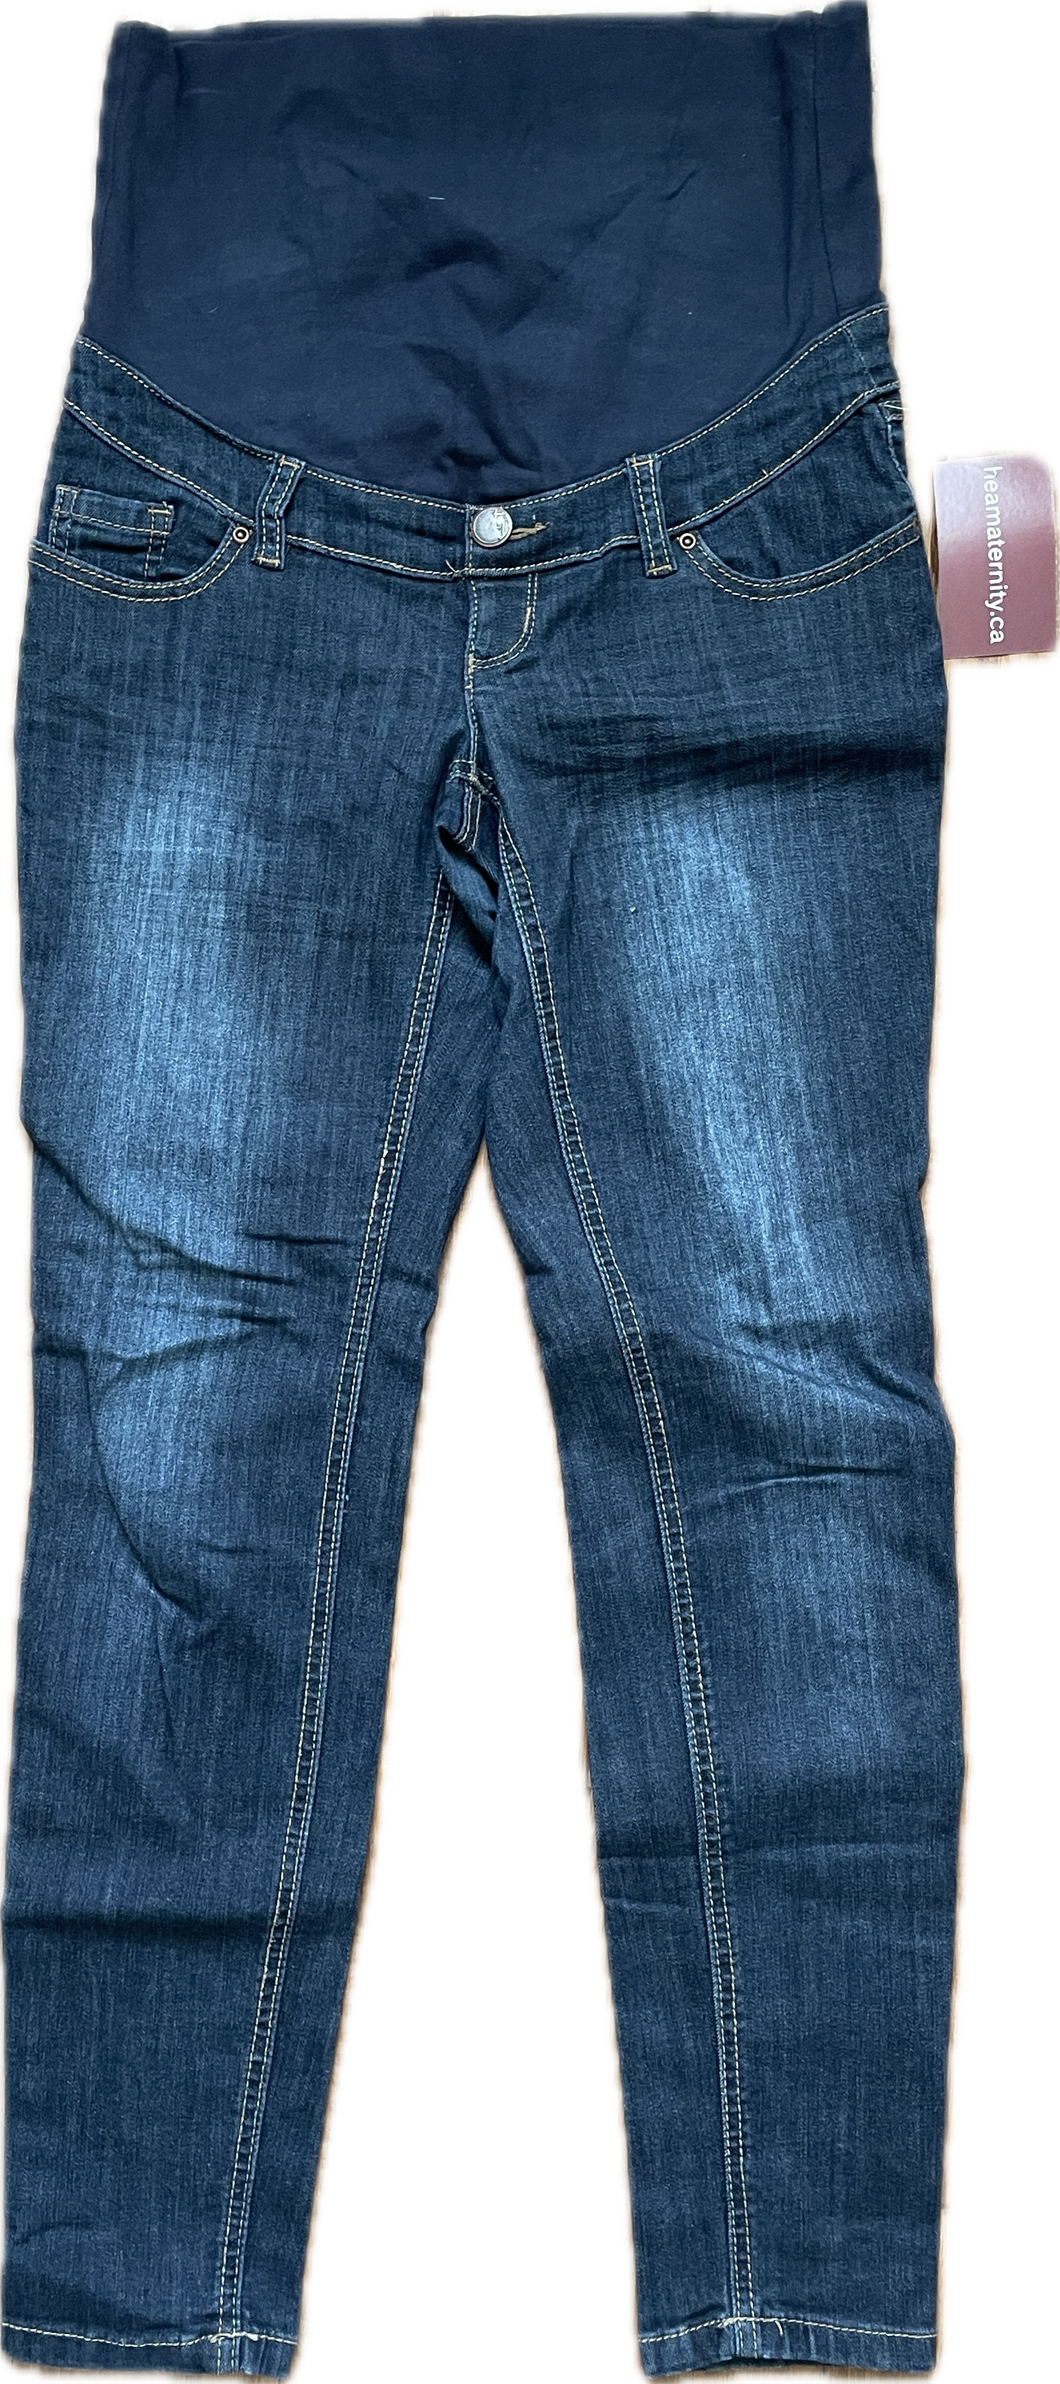 XS Thyme Maternity Skinny Jeans in Dark Wash